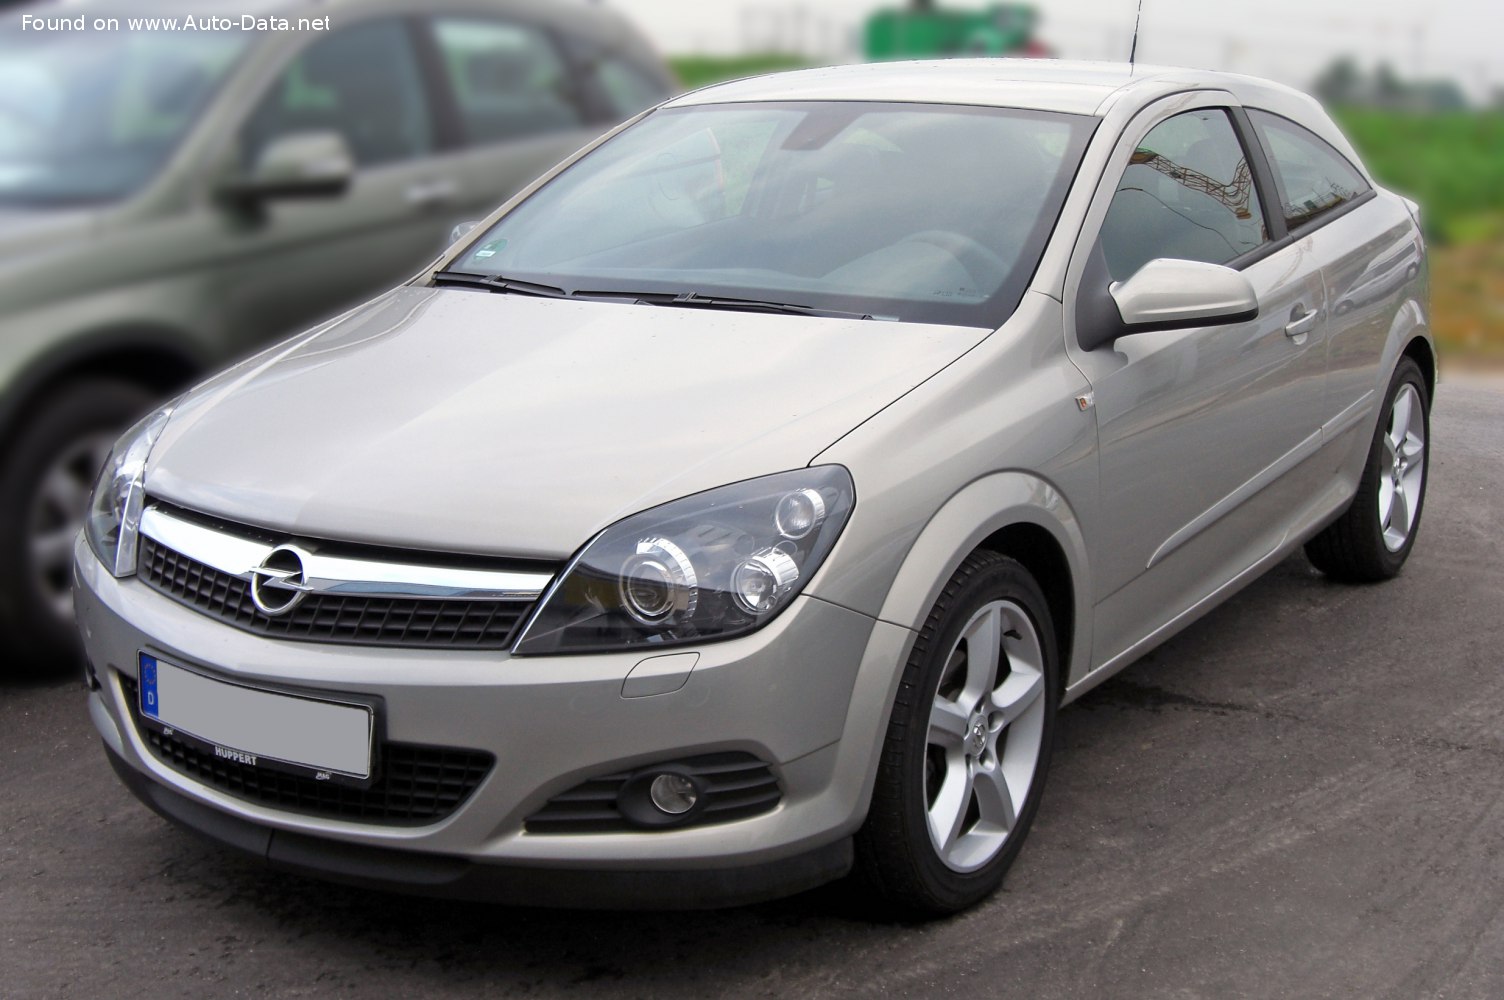 2007 Opel Astra H GTC (facelift 2007) 1.6 Turbo ECOTEC (180 Hp